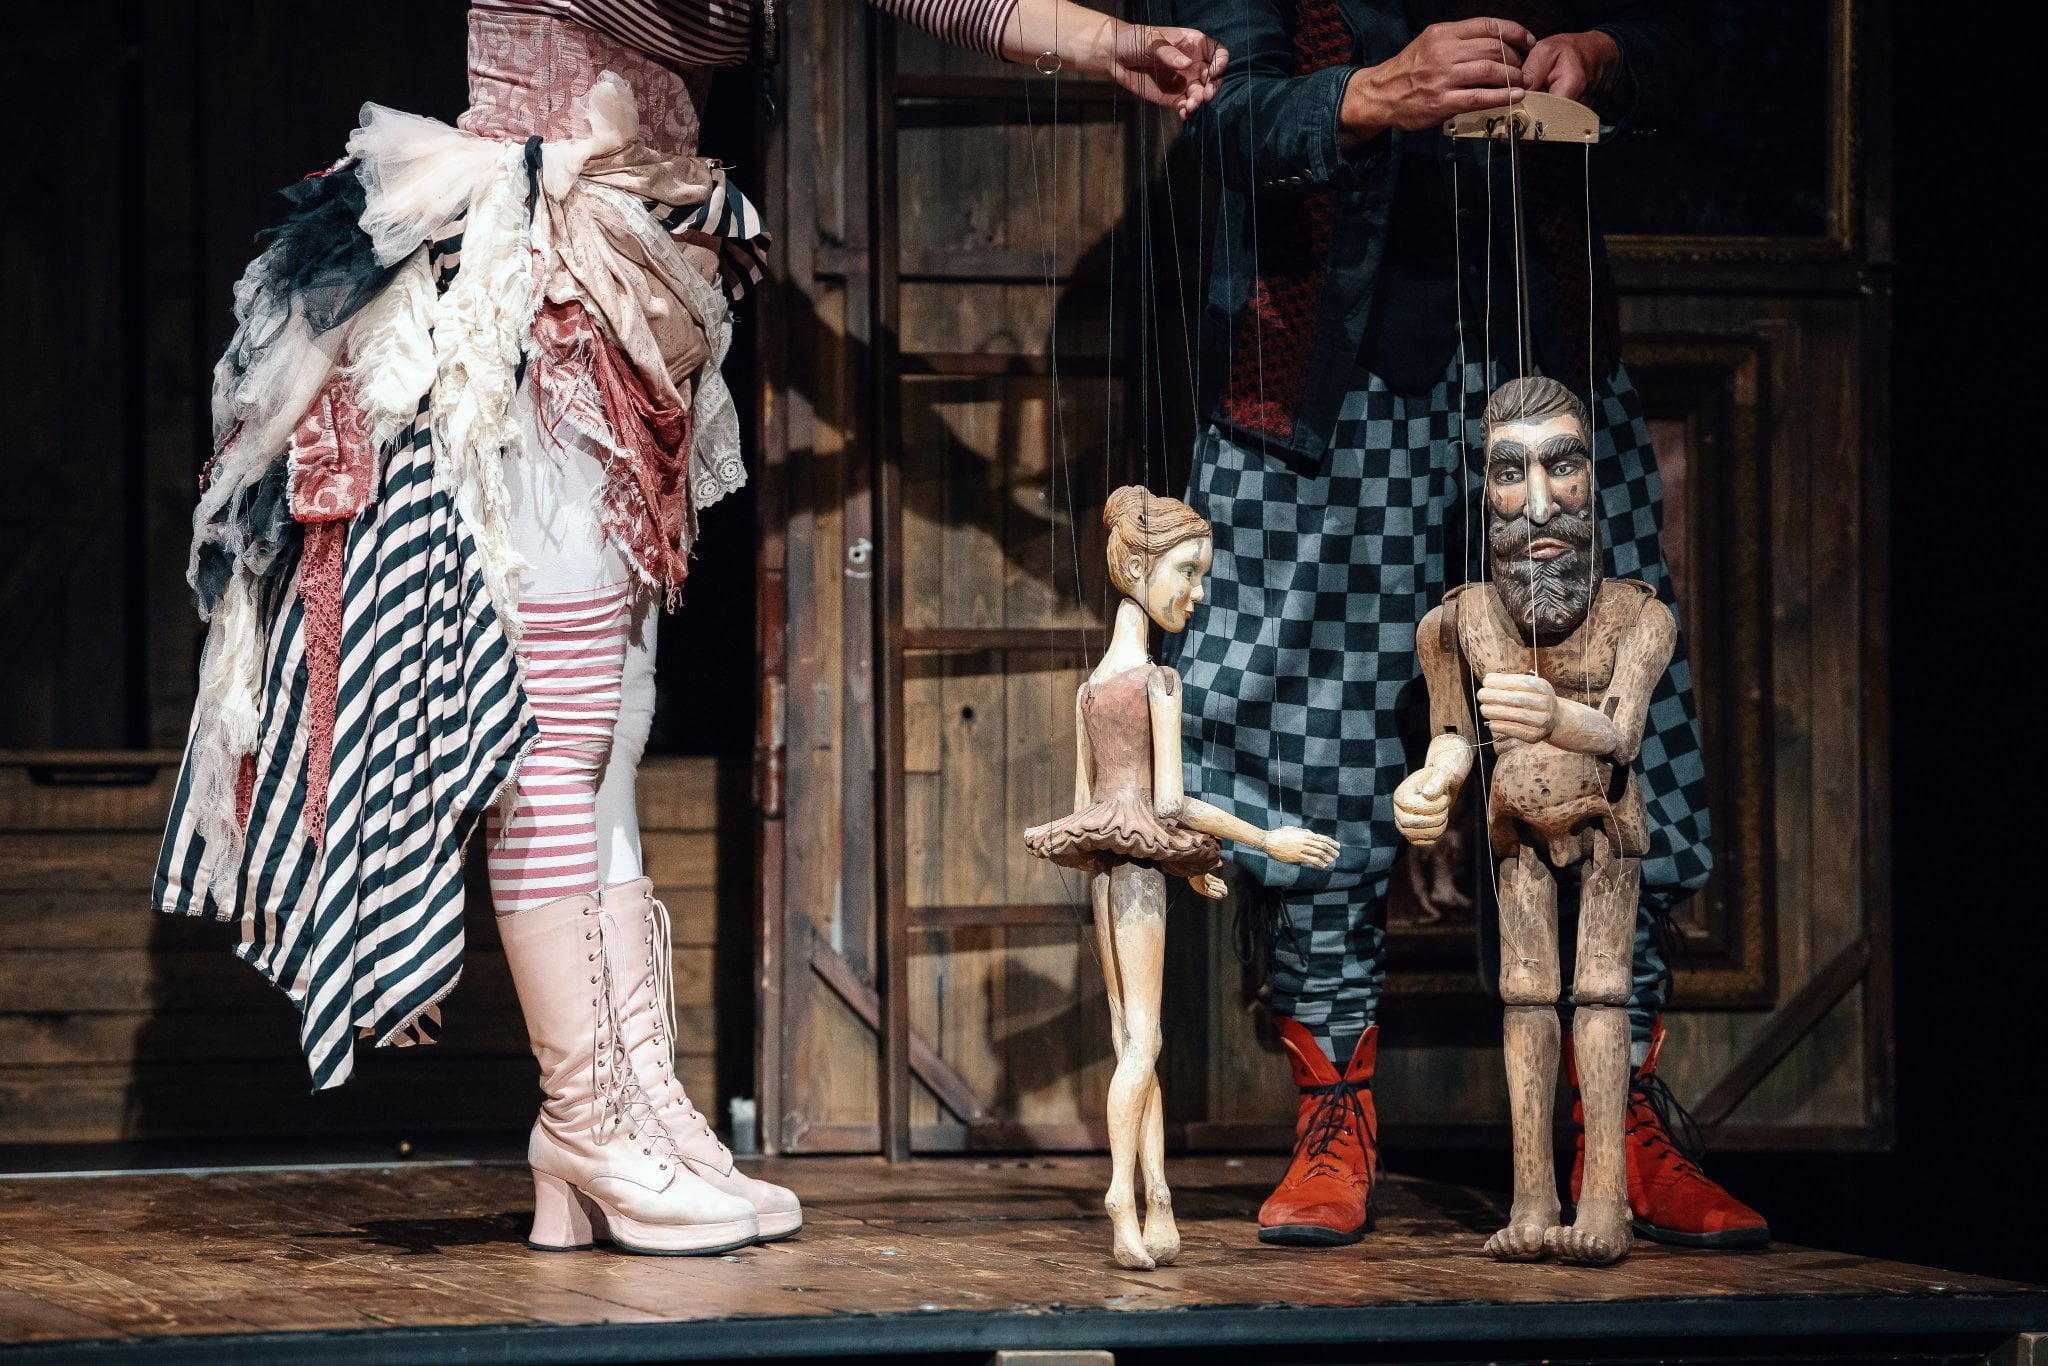 scena ze spektaklu Hamlet on the road, dwie postaci w kostiumach na pierwszym planie